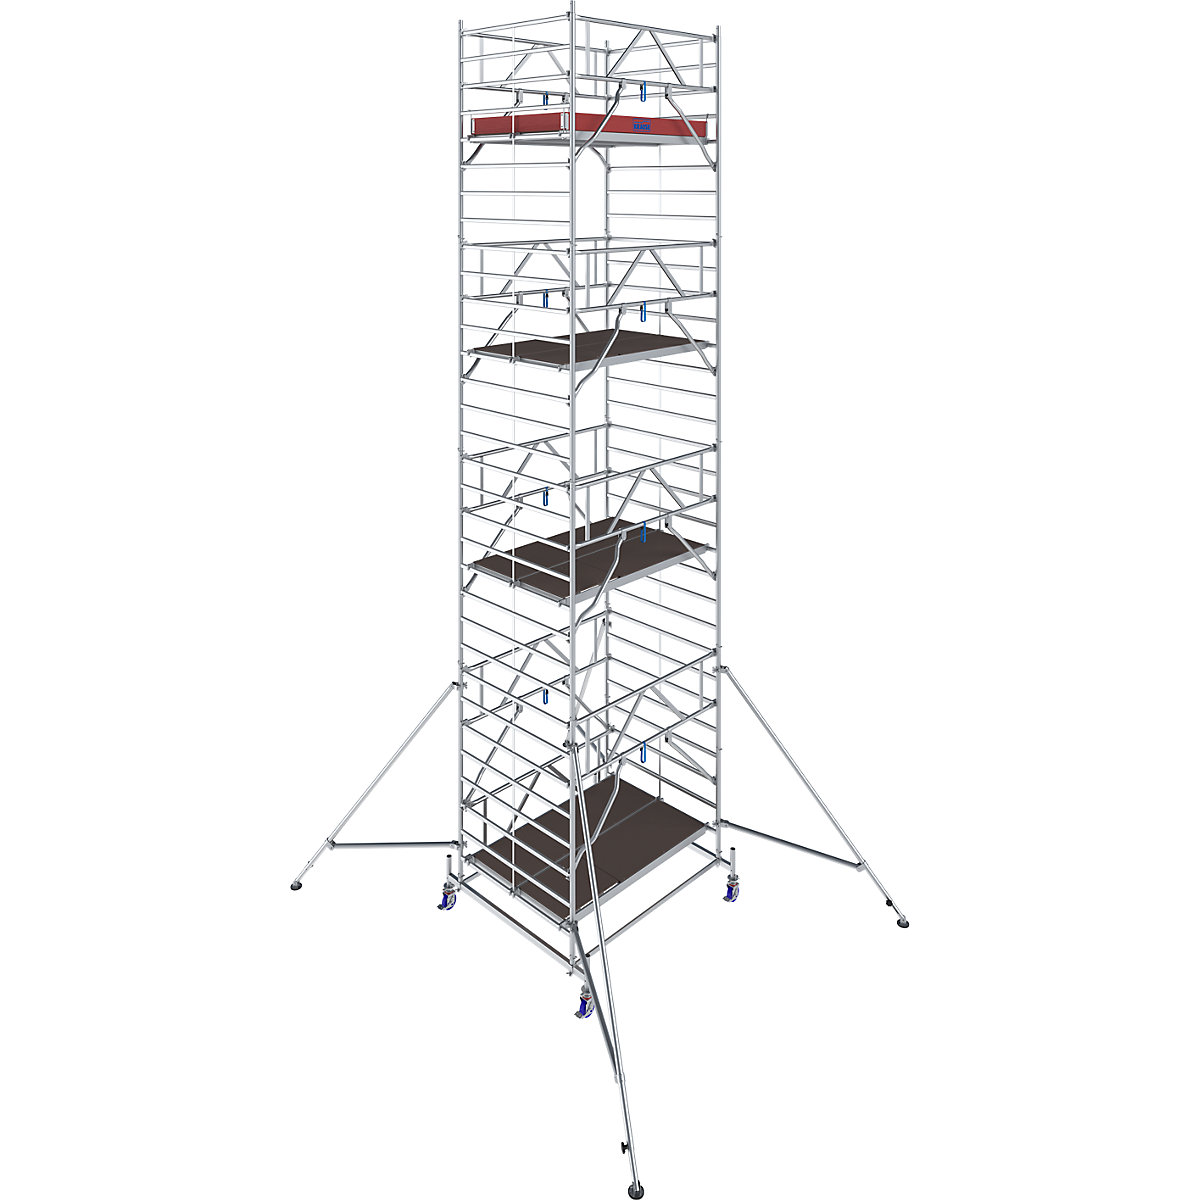 Fahrgerüst STABILO Serie 50 KRAUSE, Plattformlänge 2,50 m, Arbeitshöhe 9,40 m-6